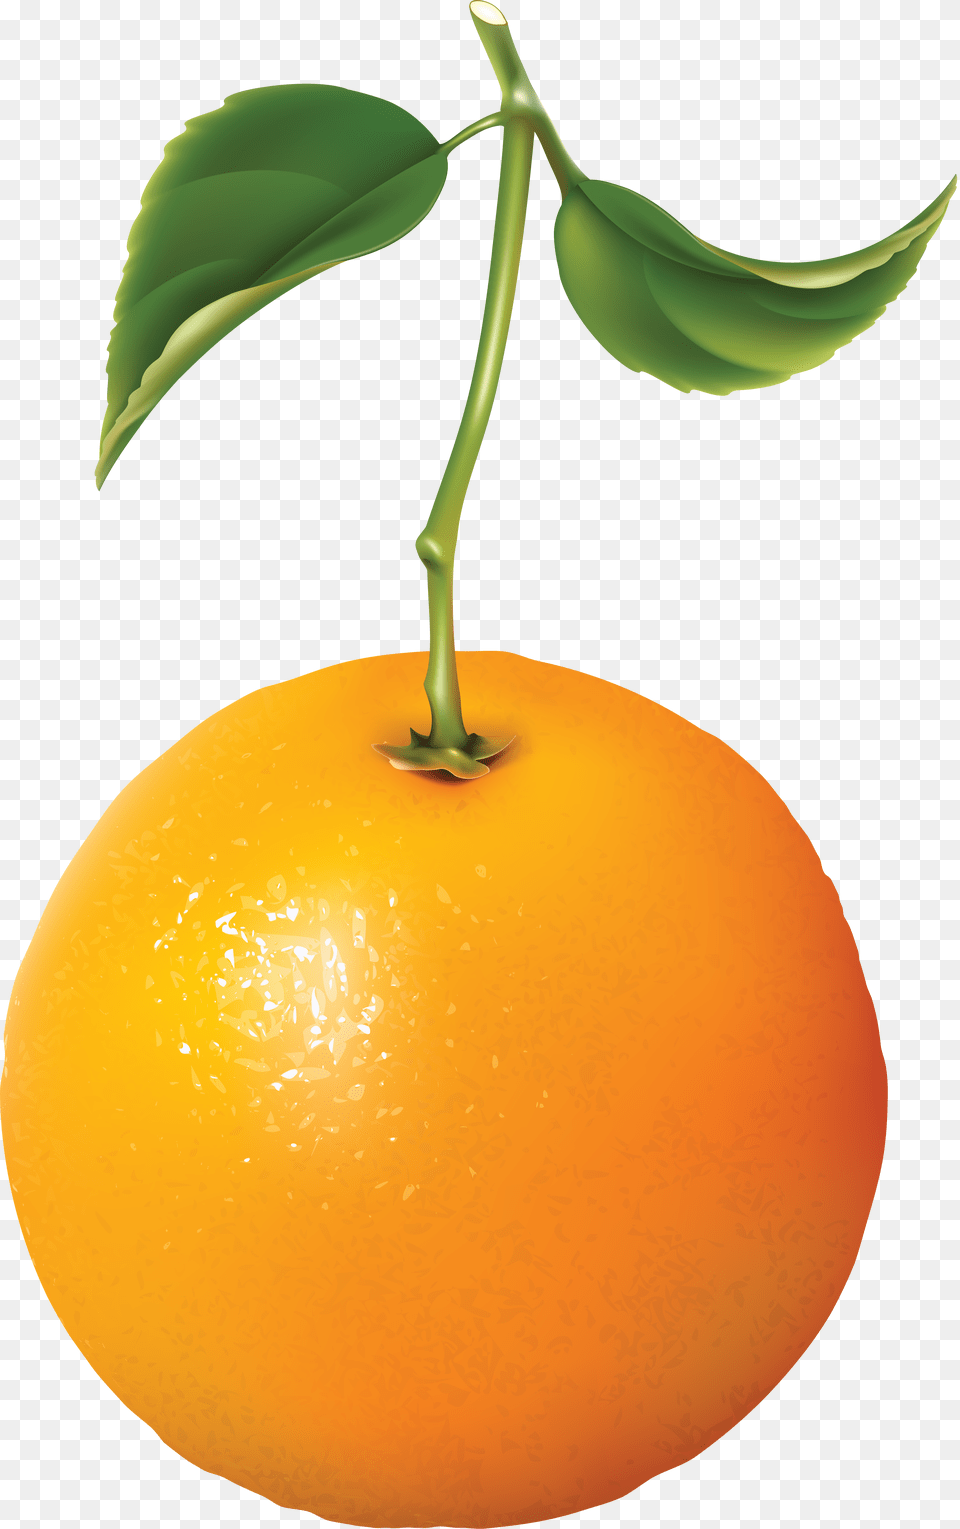 Orange Image For Download Download Orange, Citrus Fruit, Food, Fruit, Grapefruit Free Transparent Png